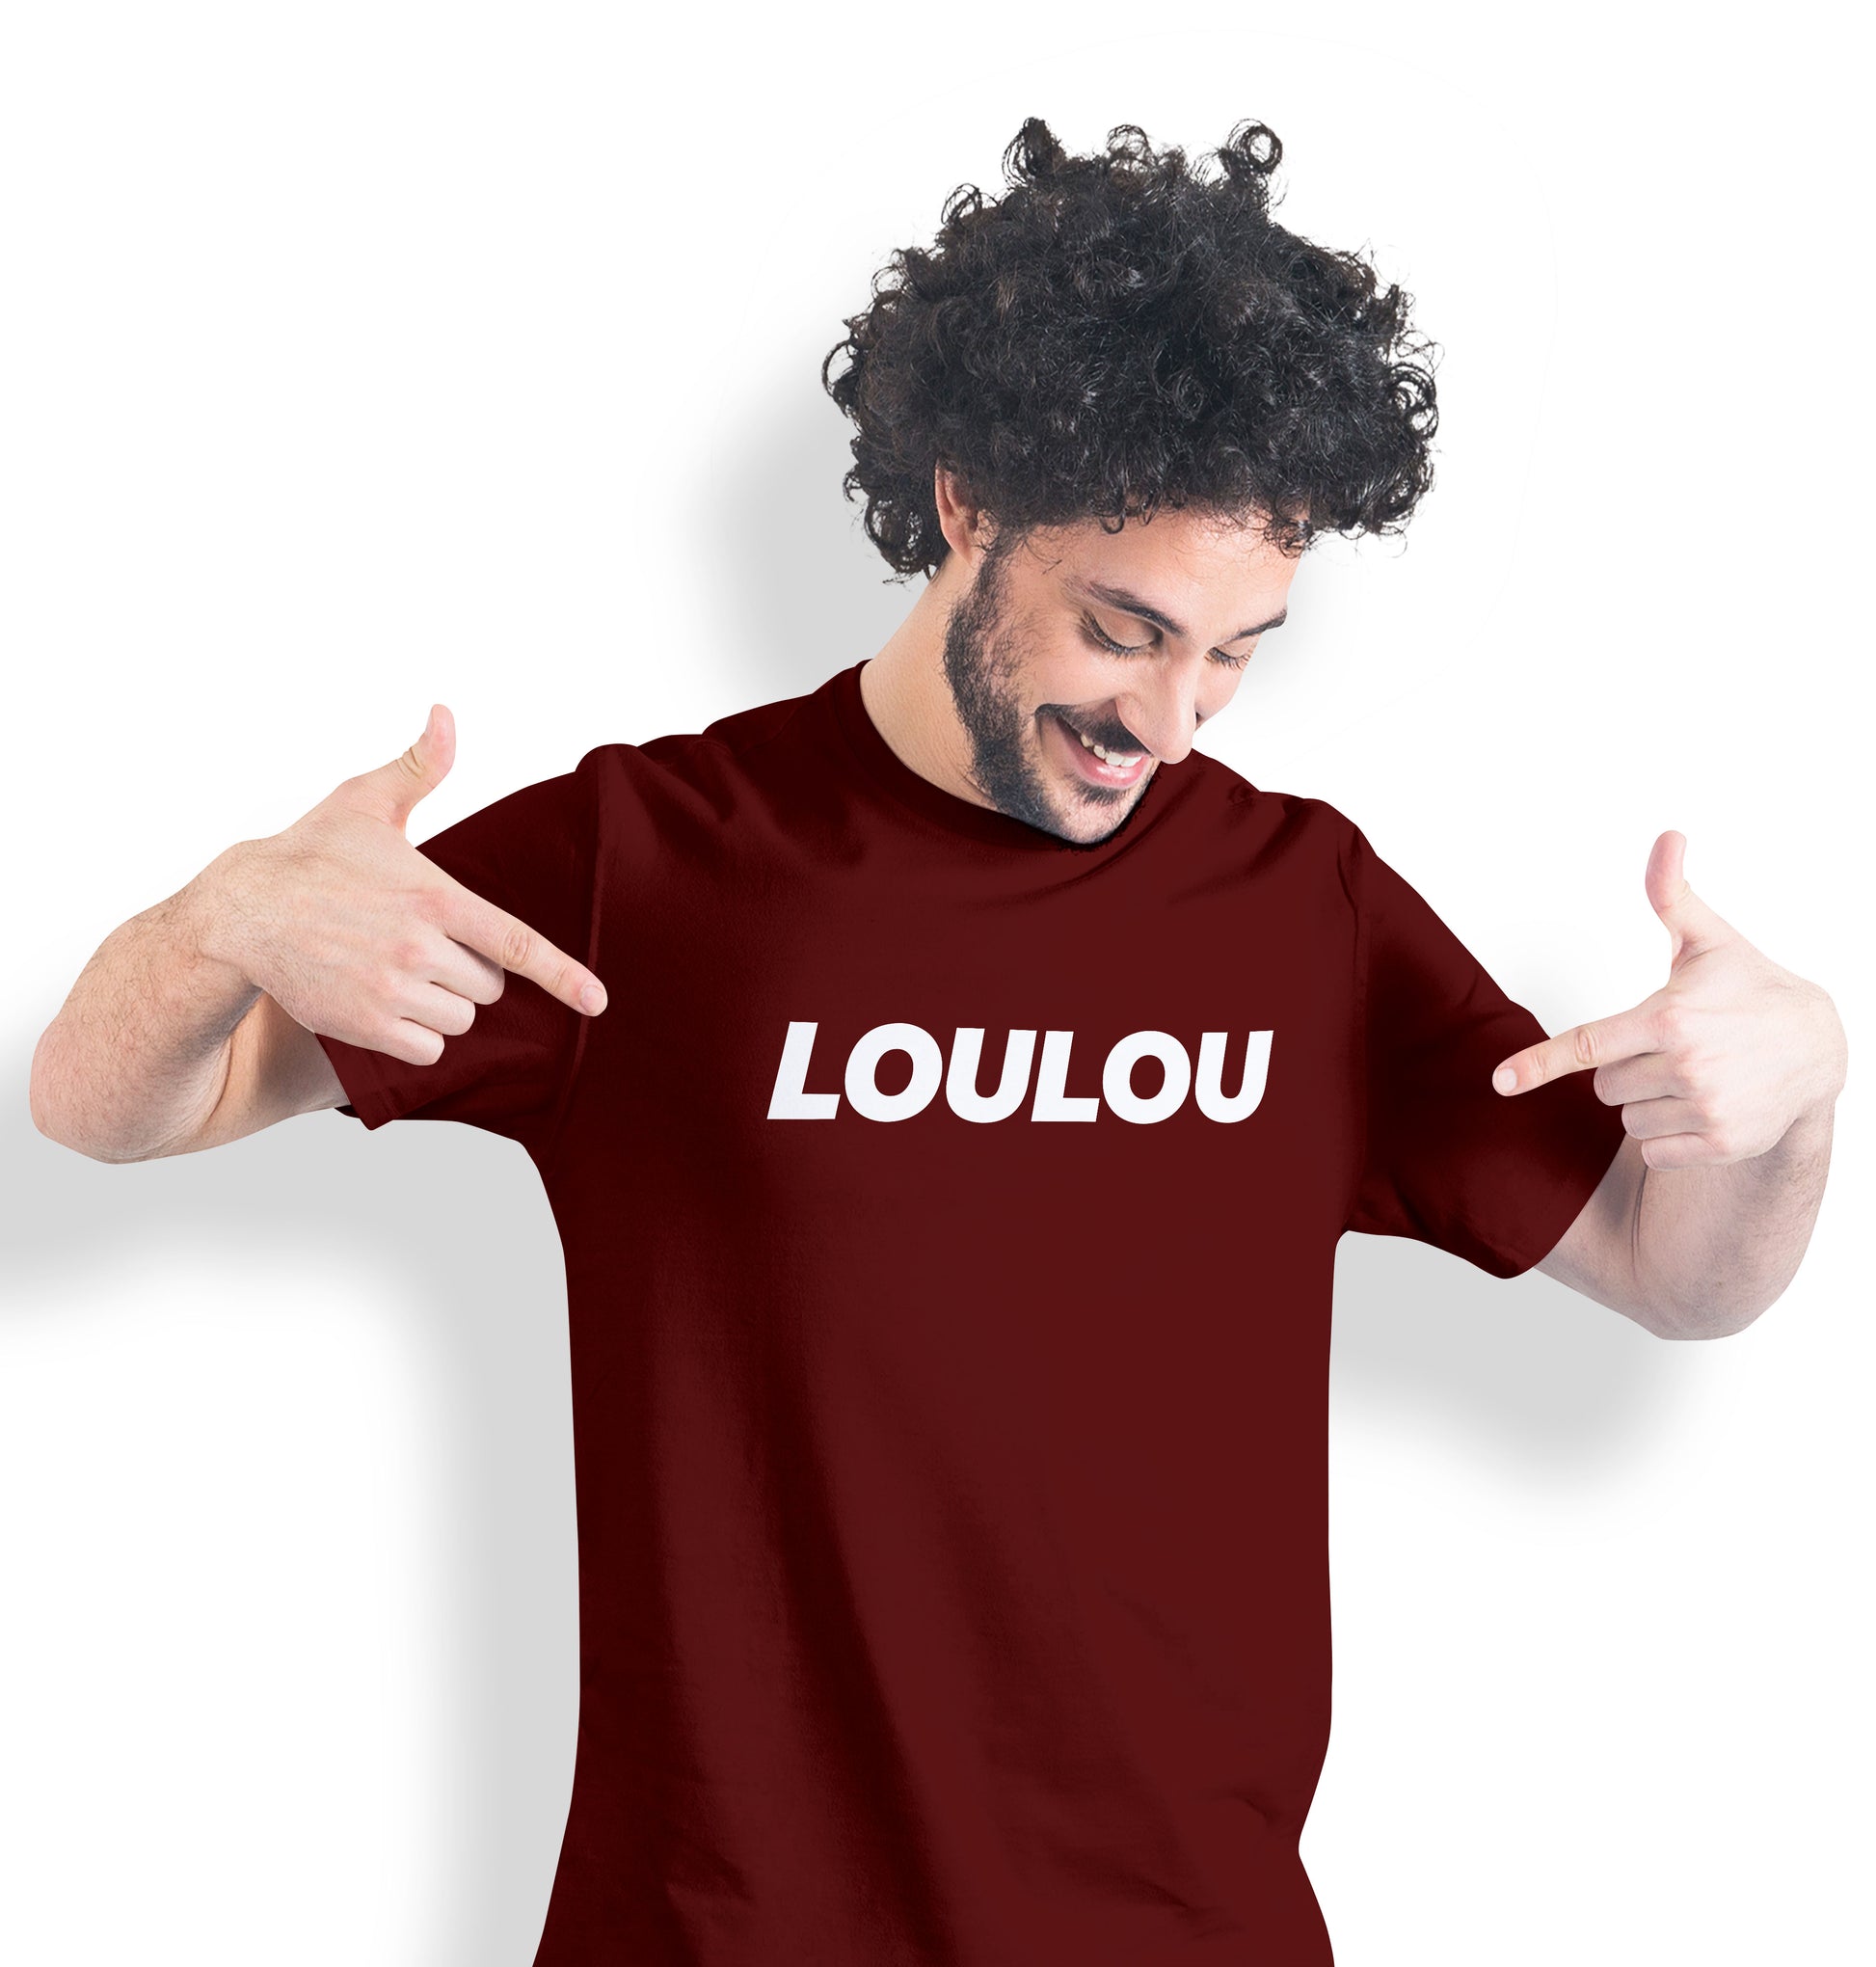 t-shirt loulou, T-French, t-shirt homme, coton bio, t-shirt saint valentin, t-shirt surnom, t-shirt humour, t-shirt rouge